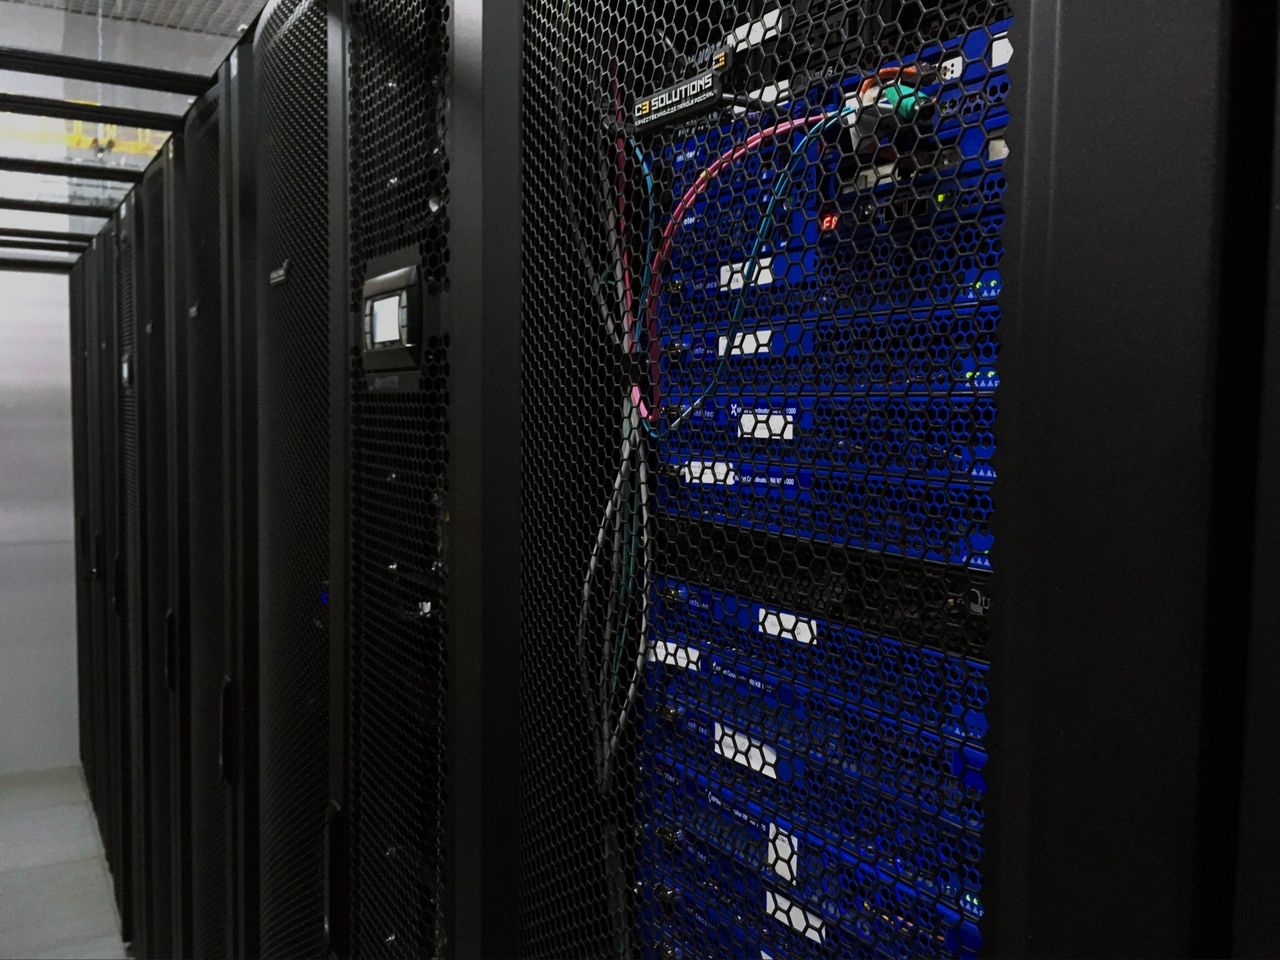 

В 2020 году в Удмуртии предотвратили 209 попыток взлома серверов Центра обработки данных

